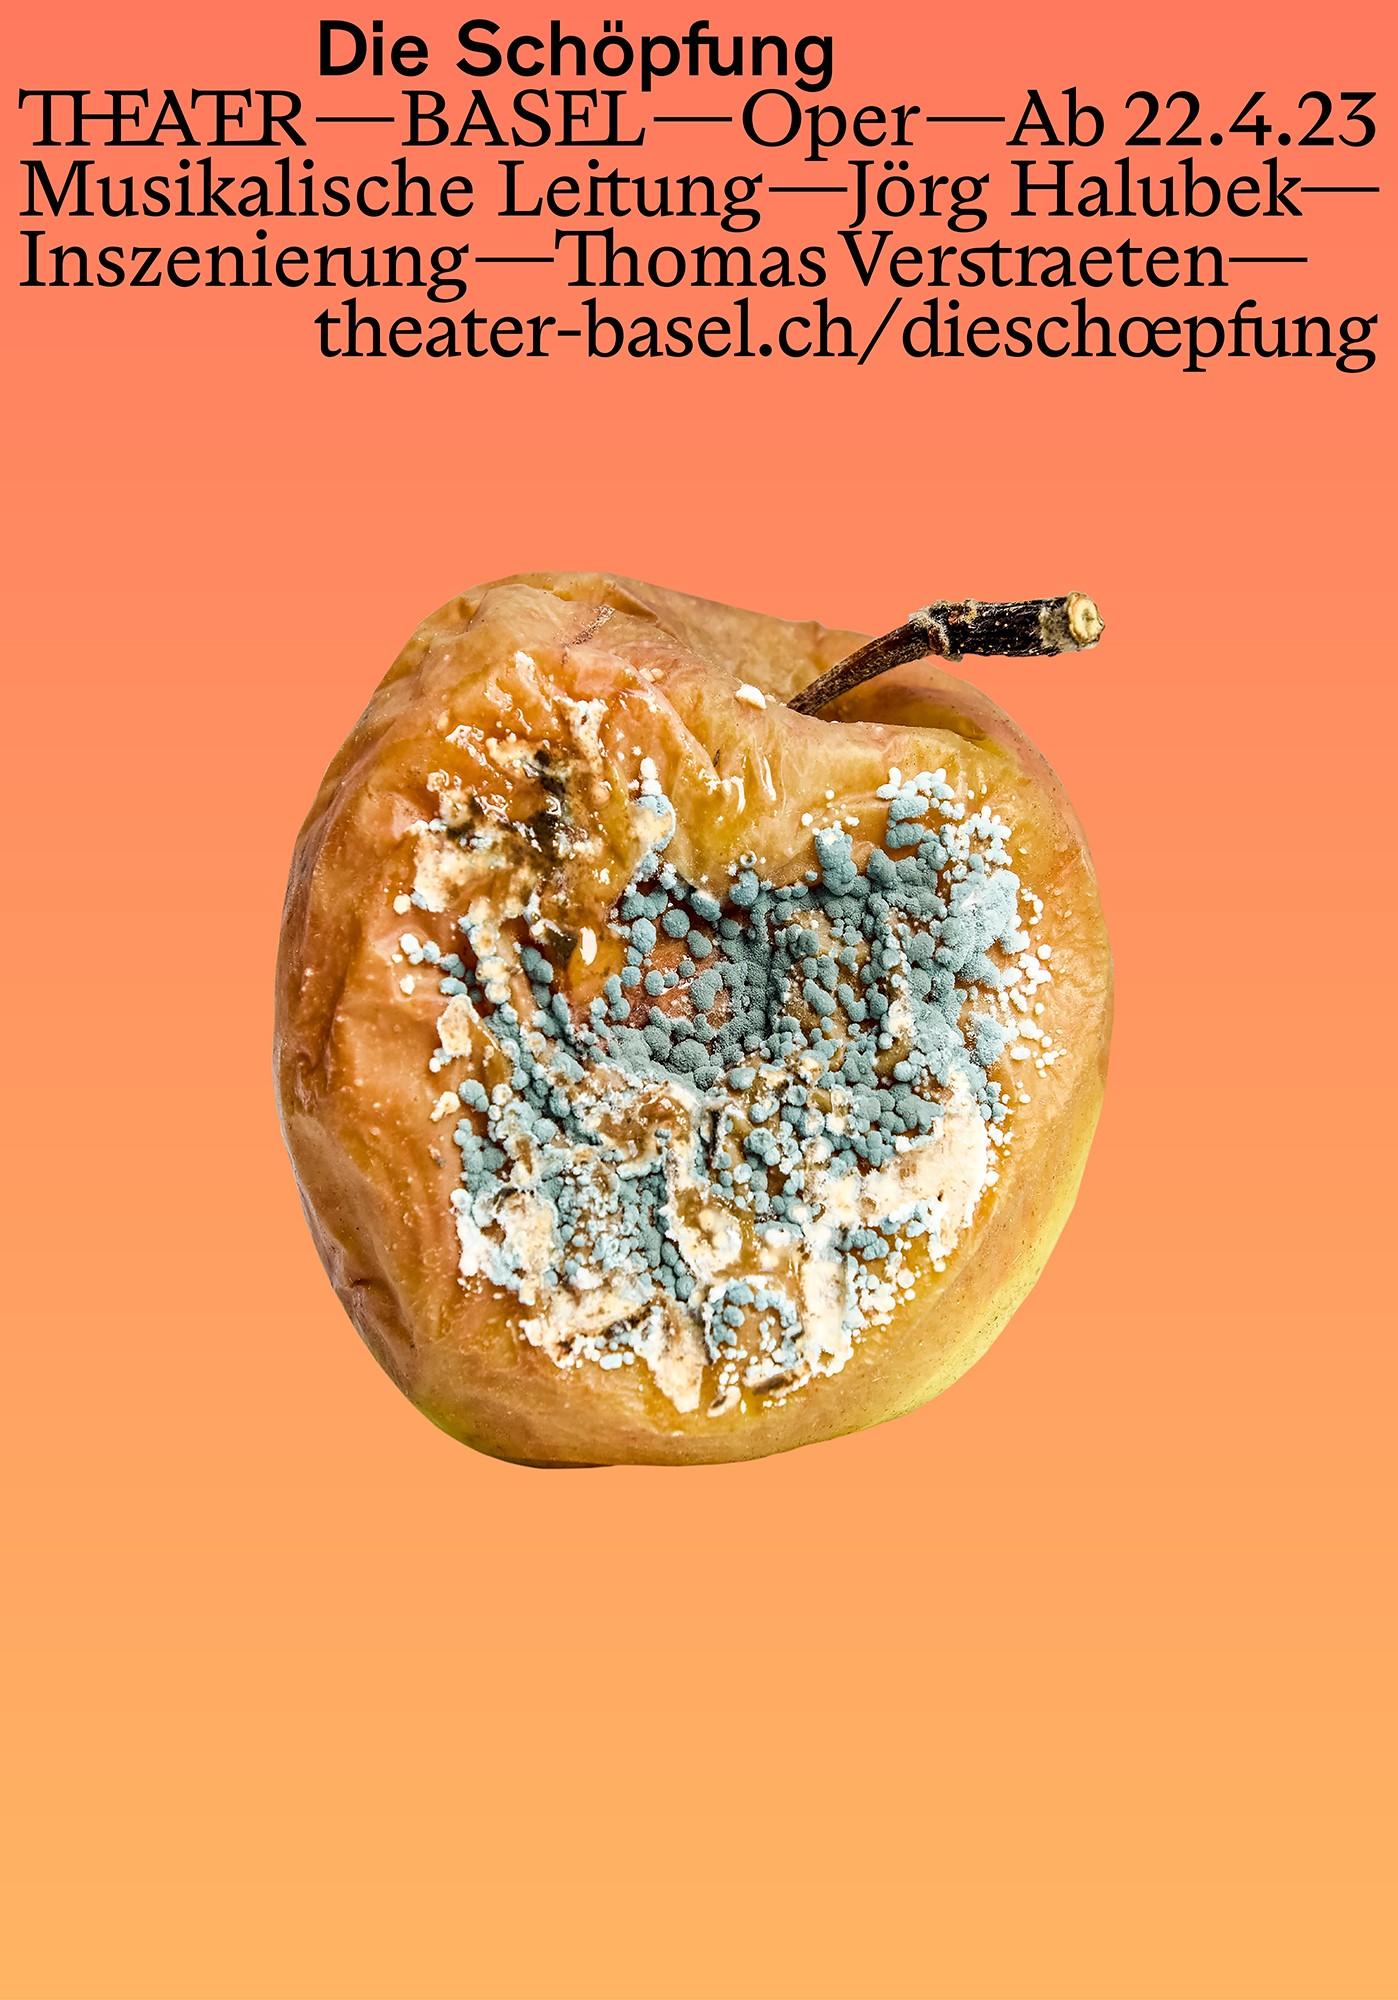 Plakatmotiv 1 für Die Schöpfung - ein verschimmelter Apfel auf orangenem Hintergrund